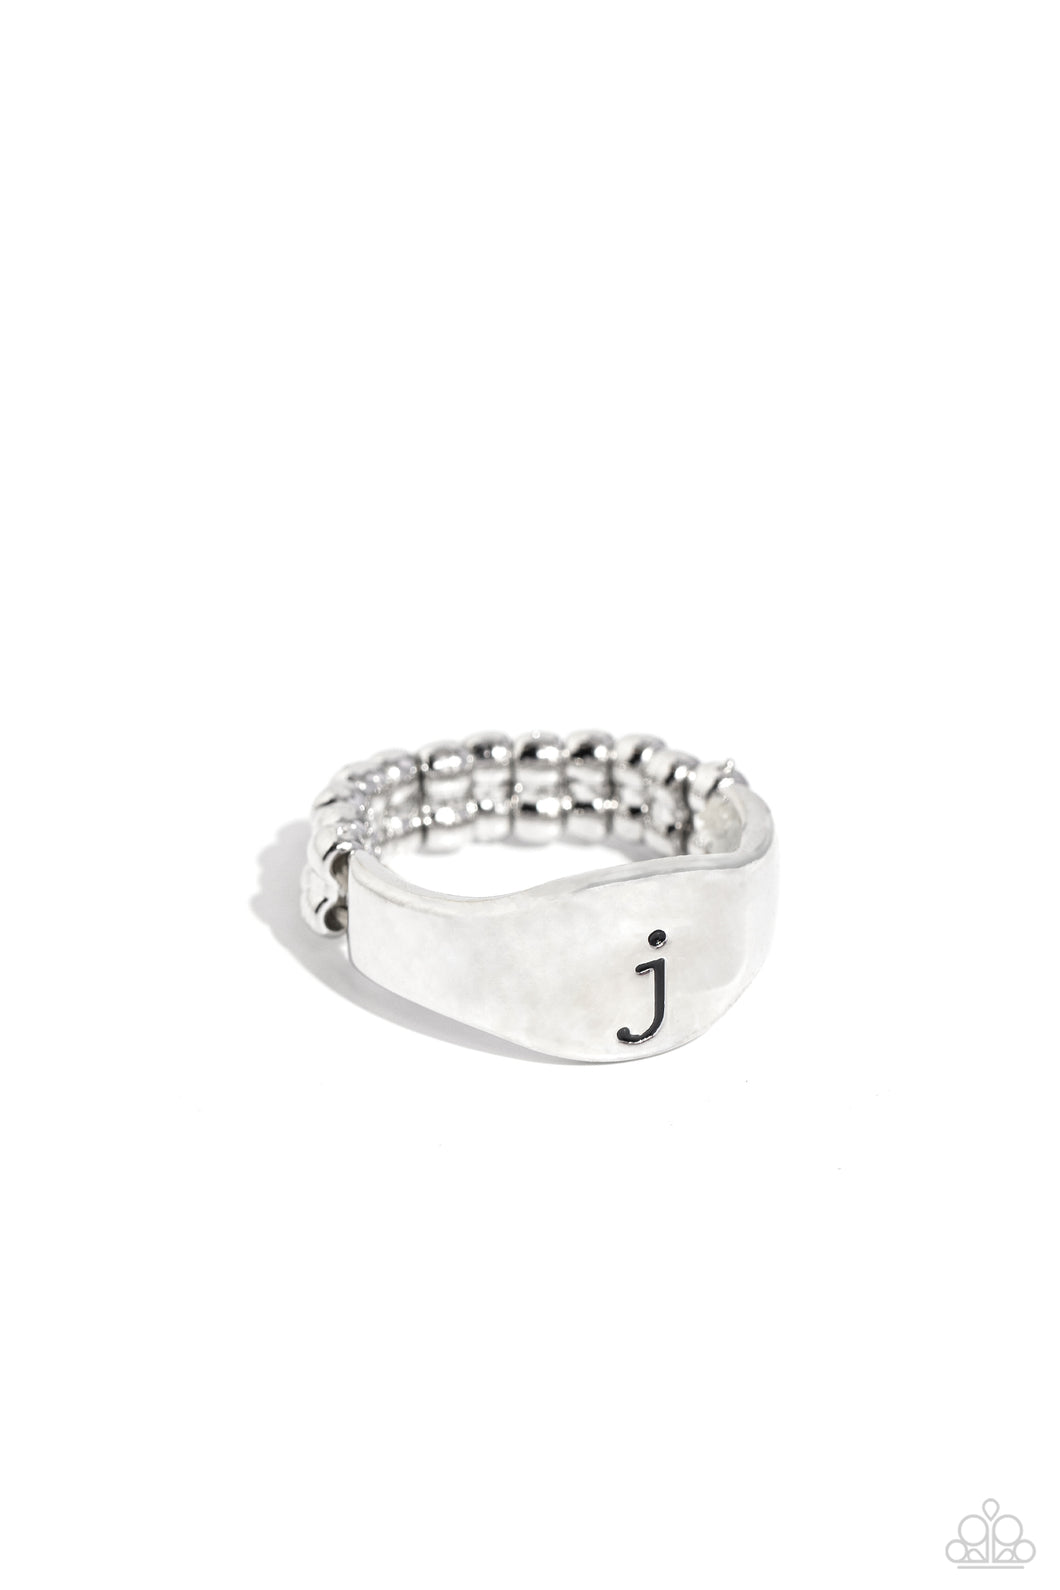 Monogram Memento - Silver - J Initial Ring